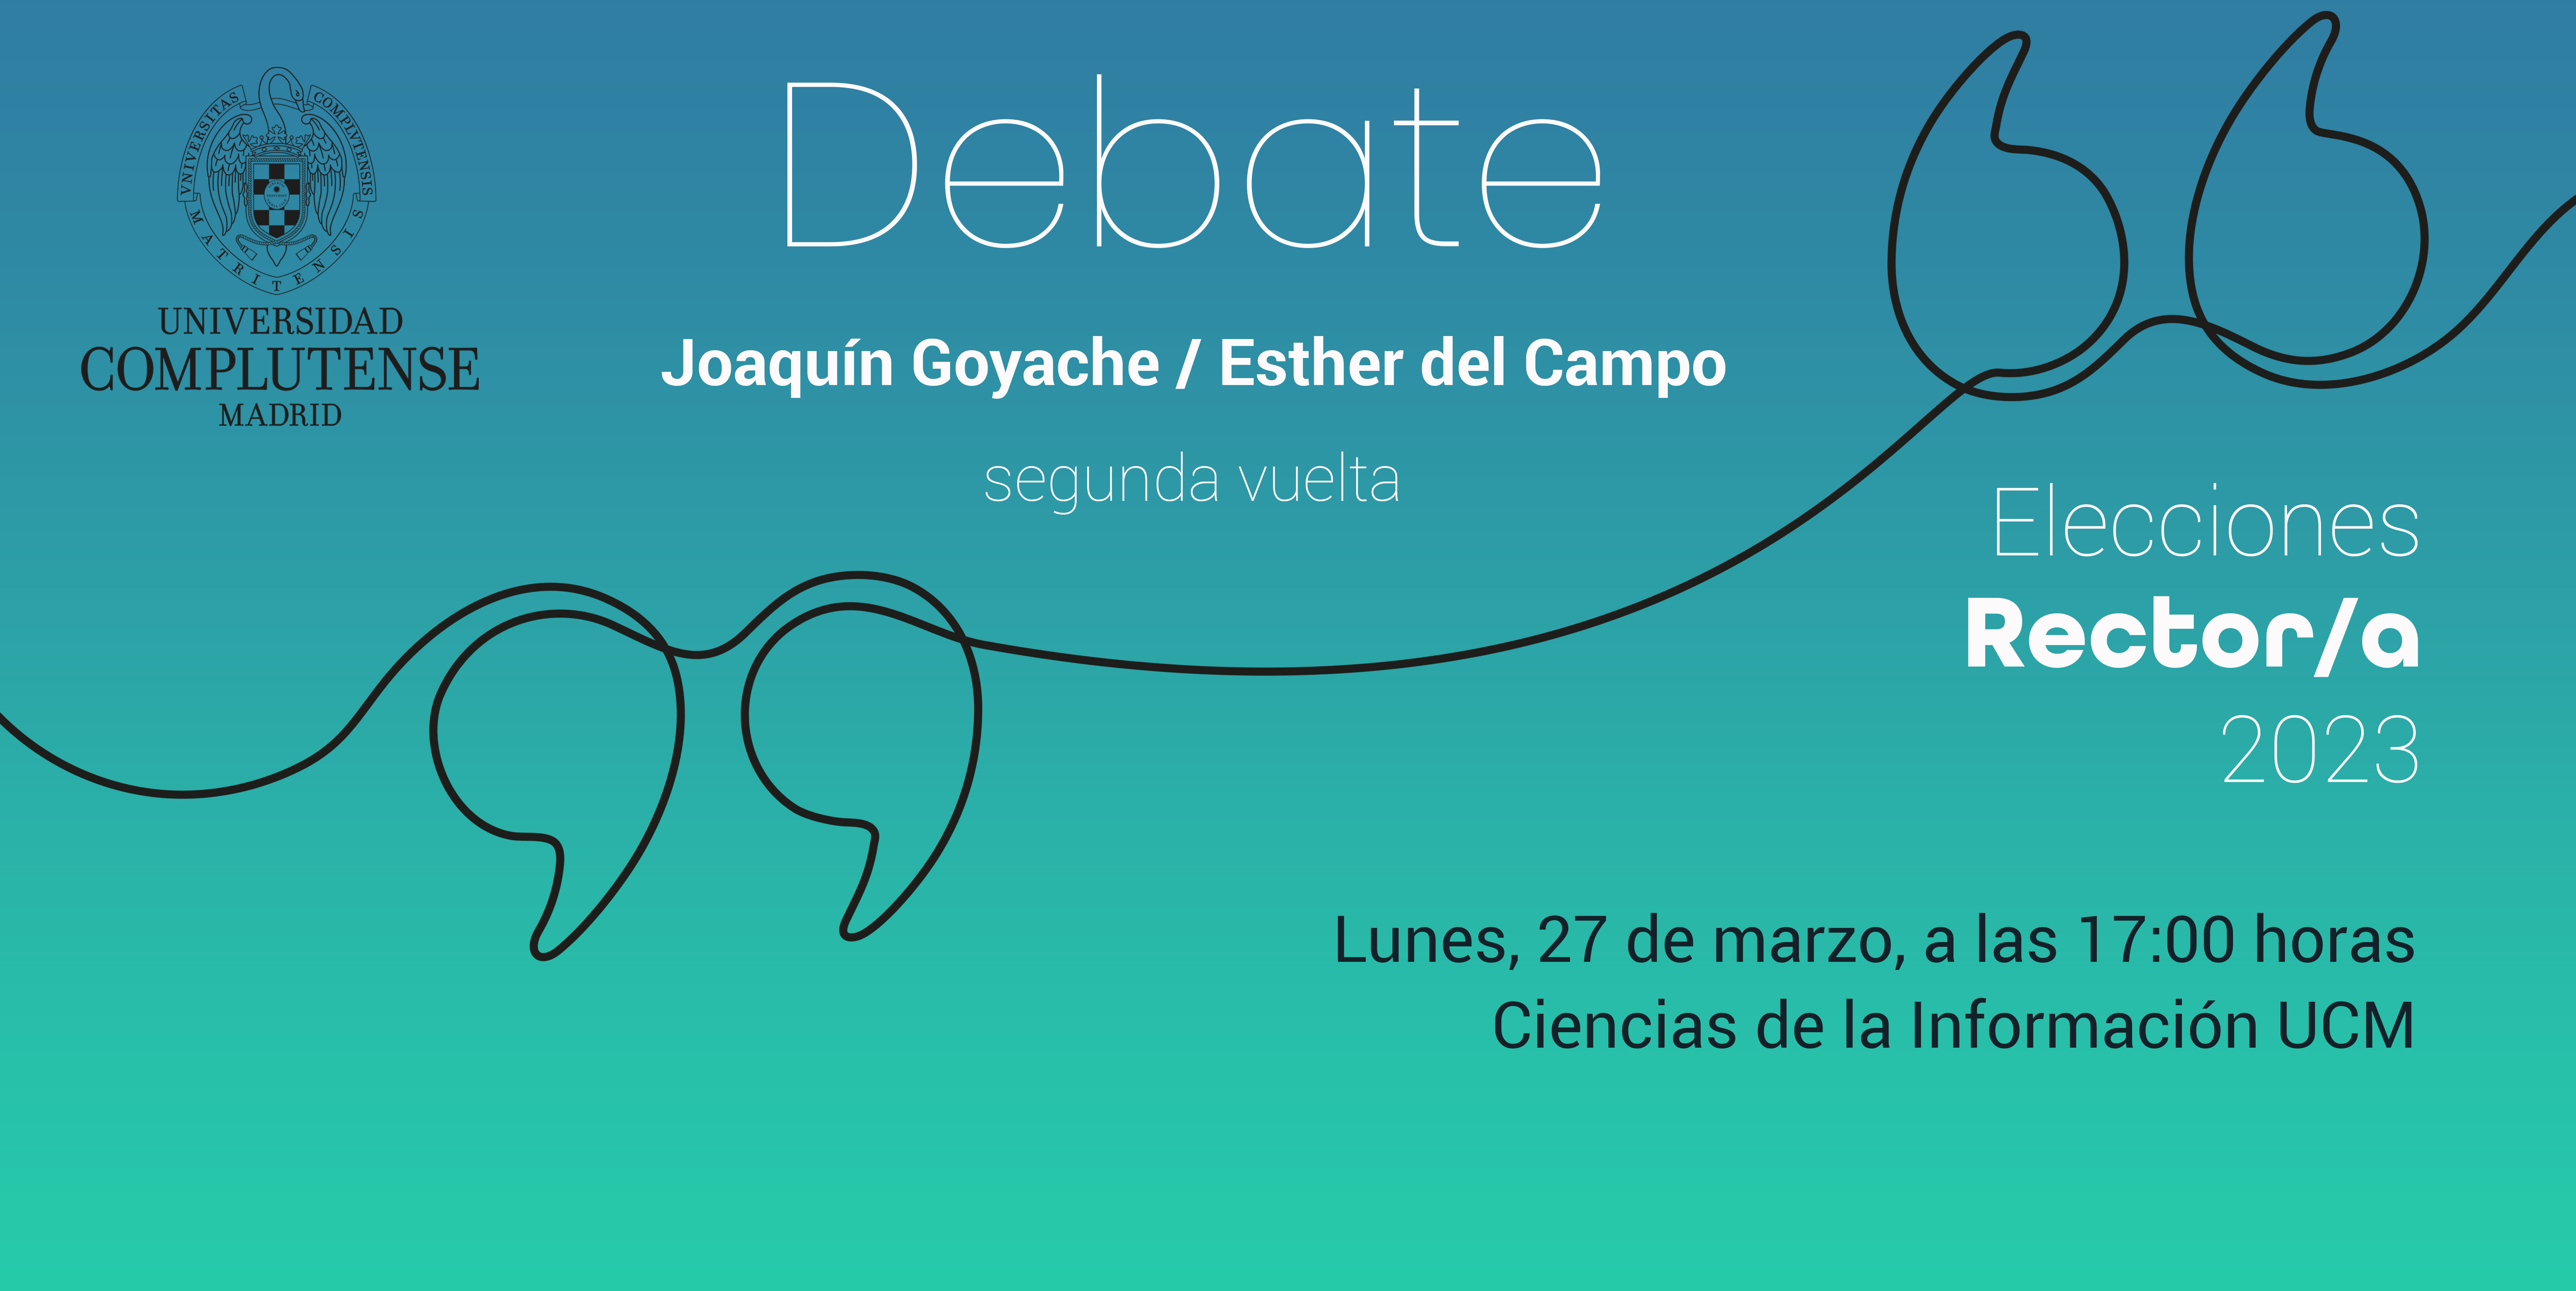 EN DIRECTO: Debate General entre los 2 candidatos a rector/a de la Universidad Complutense de Madrid. Lunes 27 de marzo, 17h